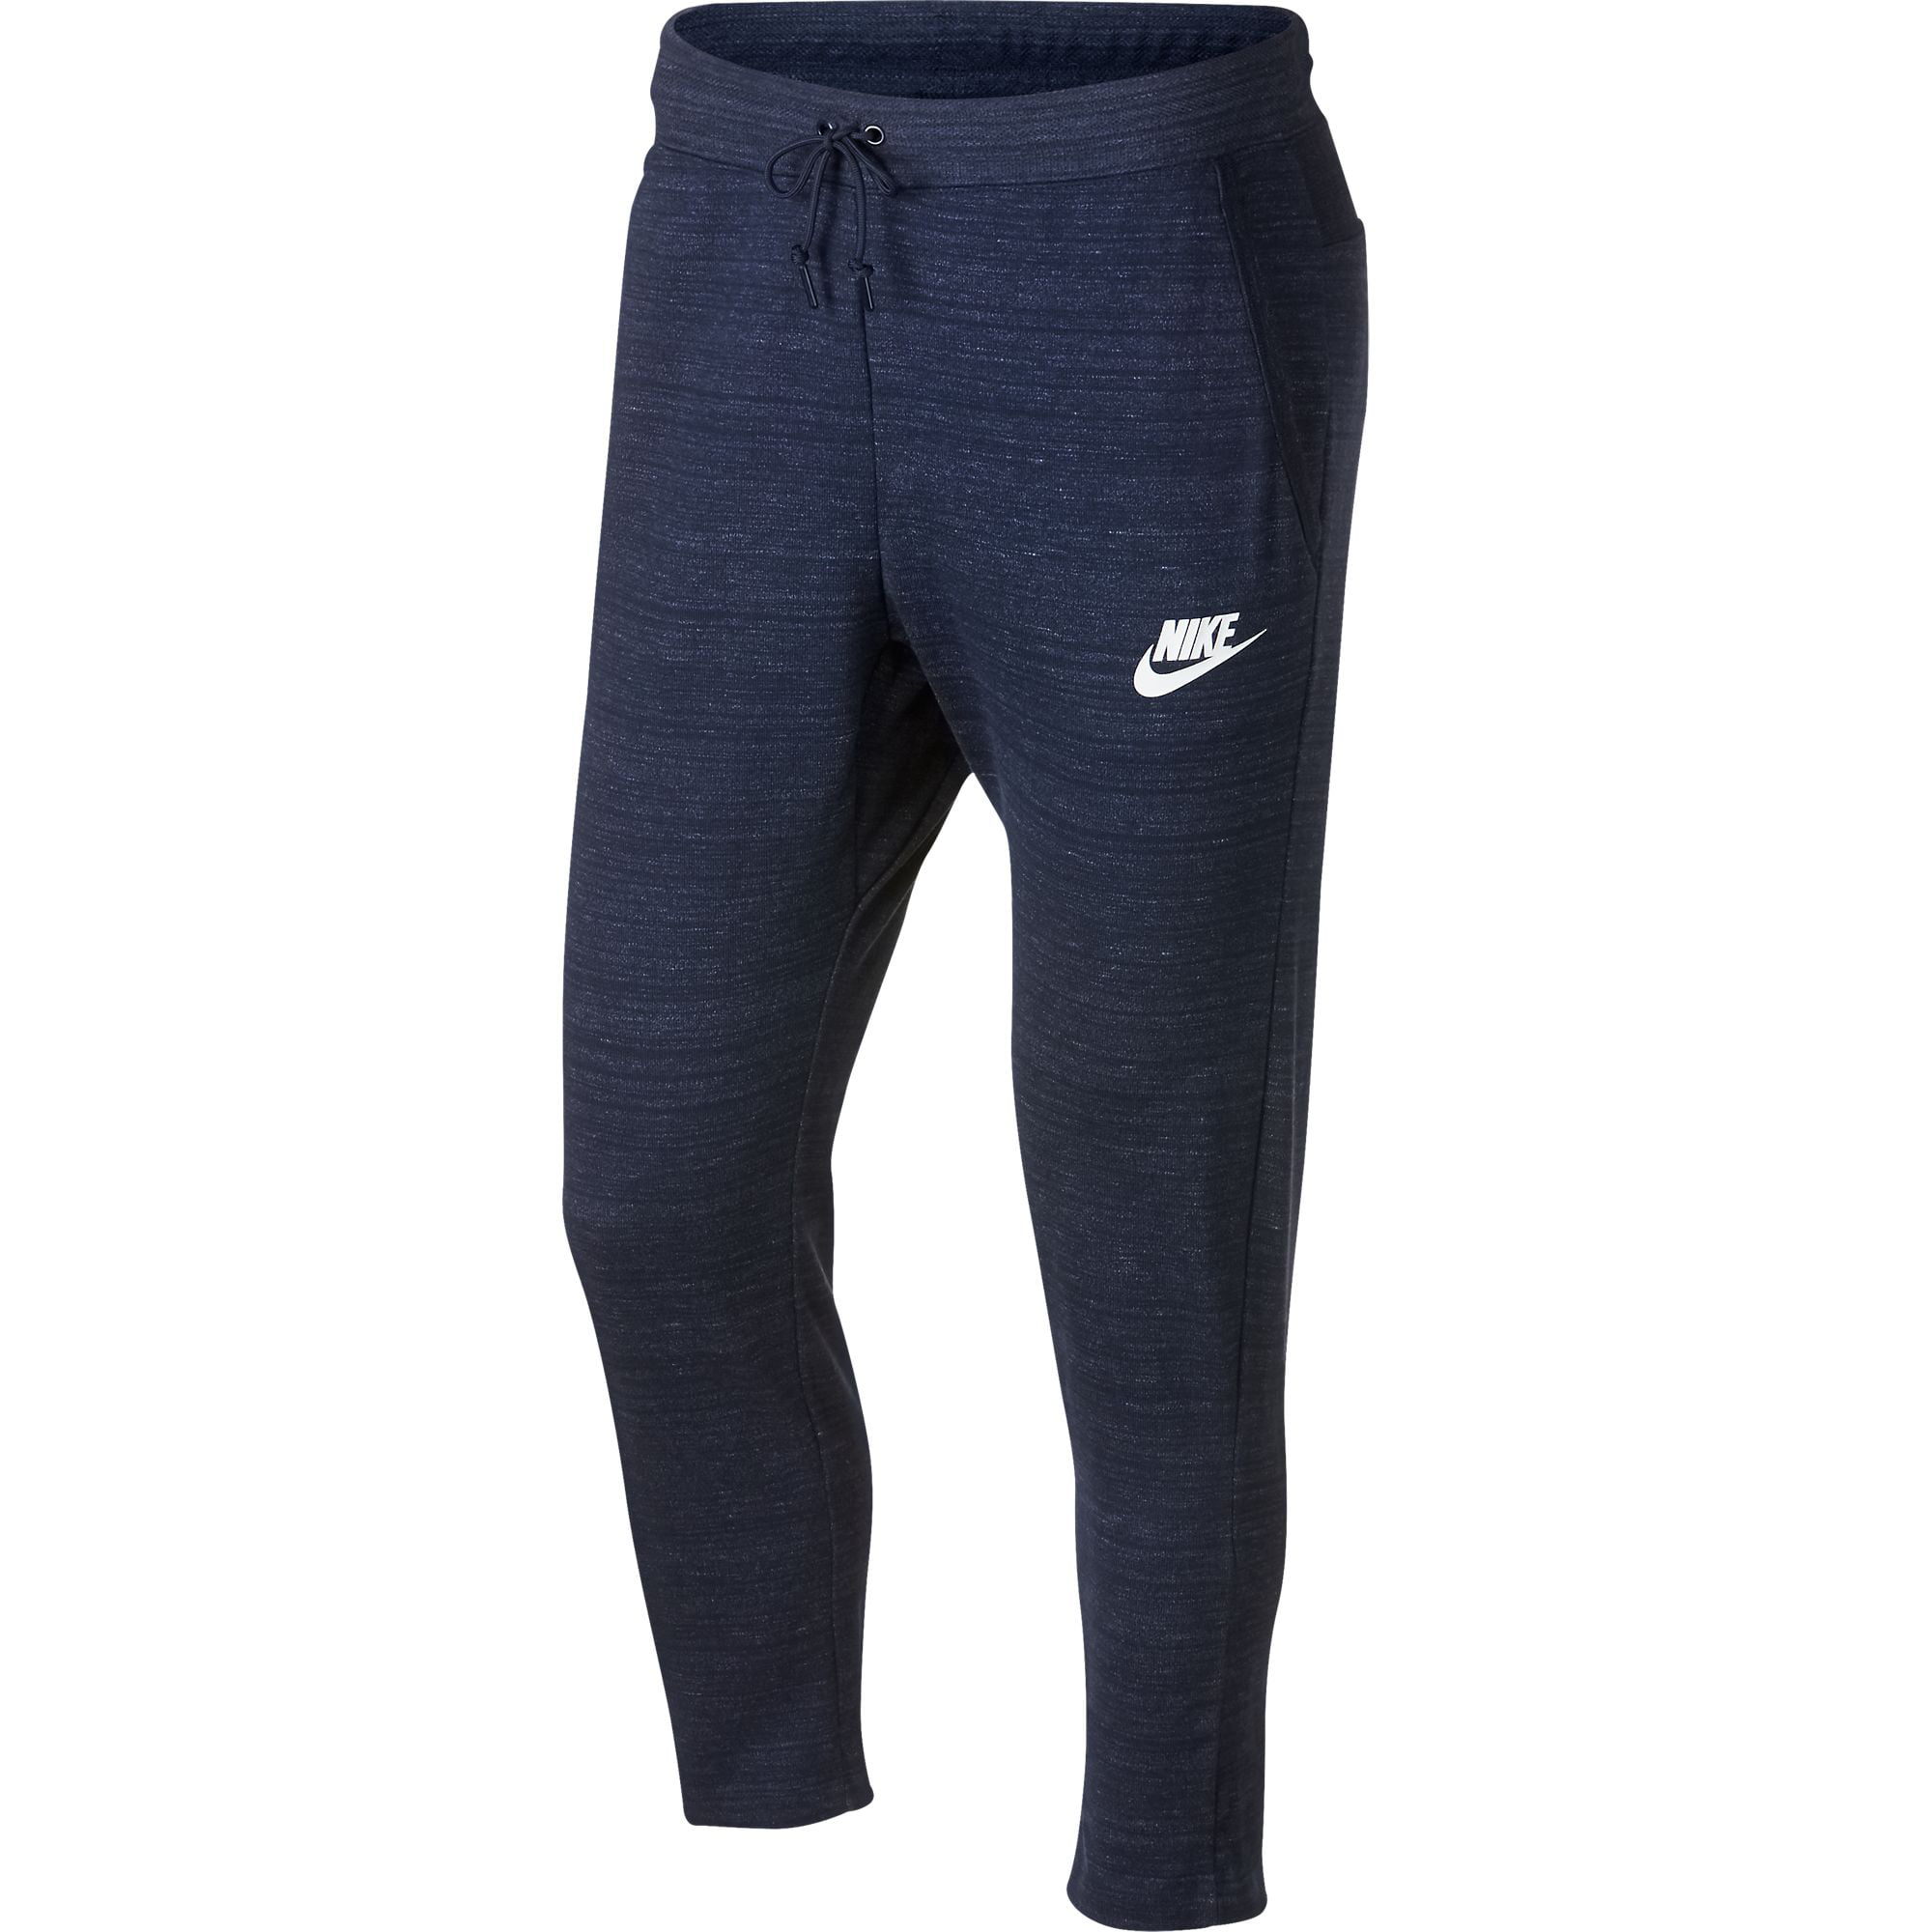 Nike Sportswear AV15 Knit Pants Heather-White 885923-451 - Walmart.com